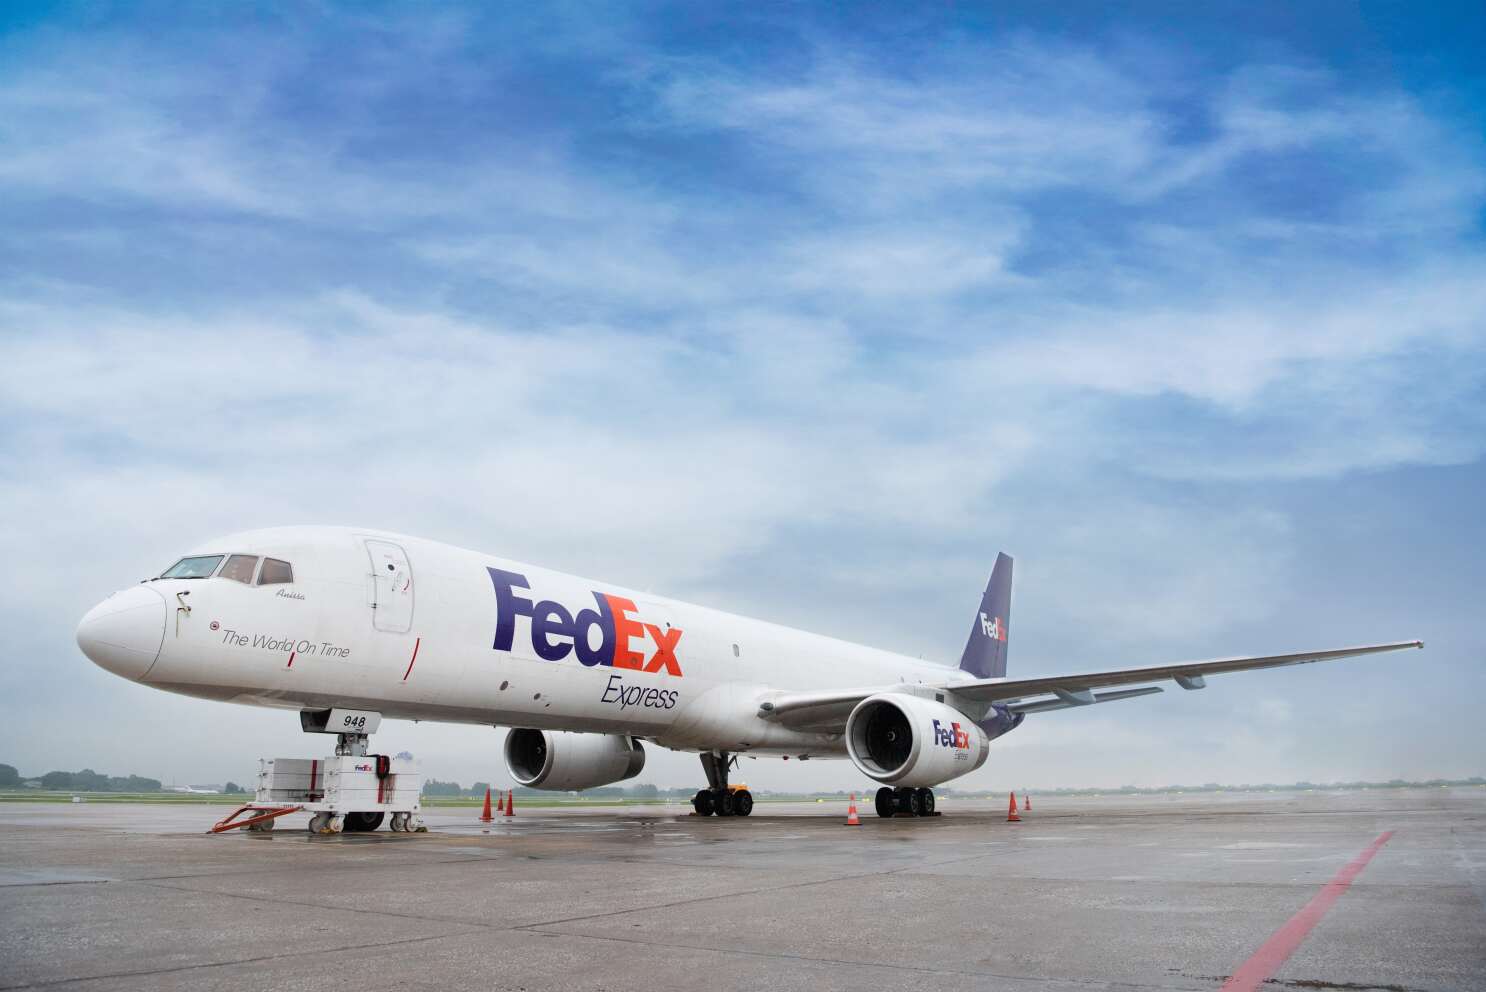 FedEx Aircraft